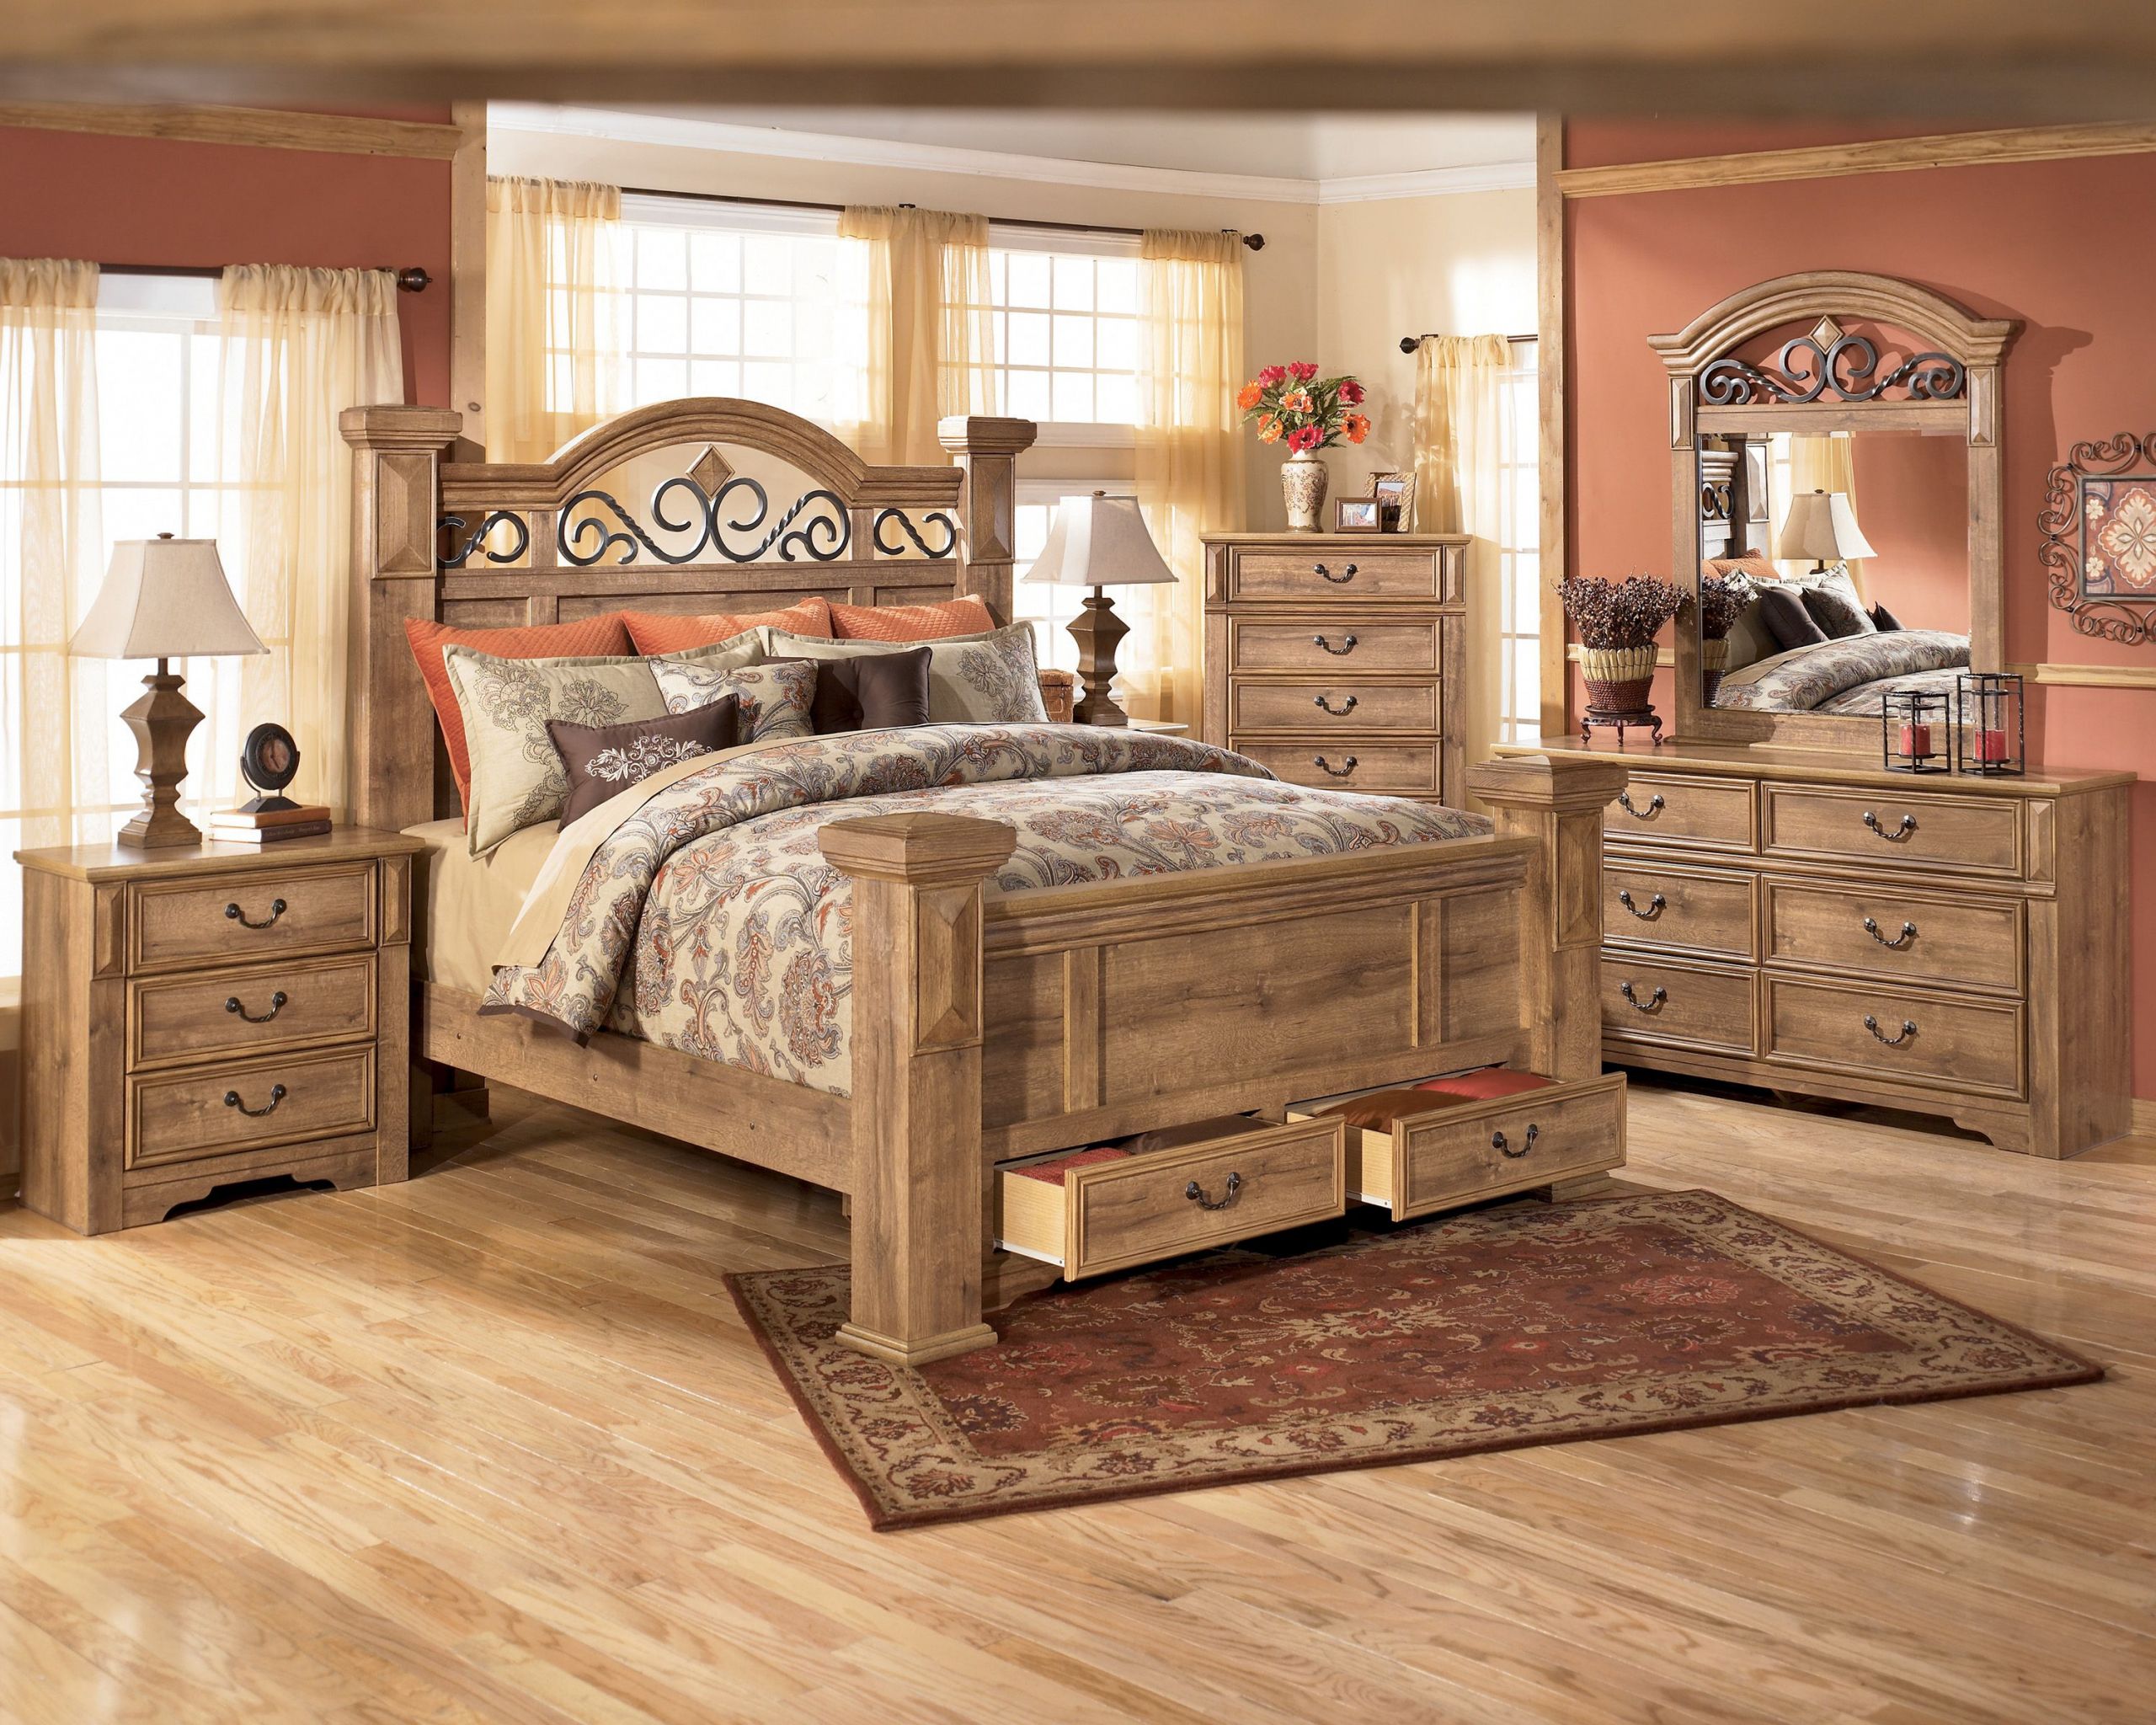 Rustic King Size Bedroom Sets
 Best King Size Bed Set Rosalinda